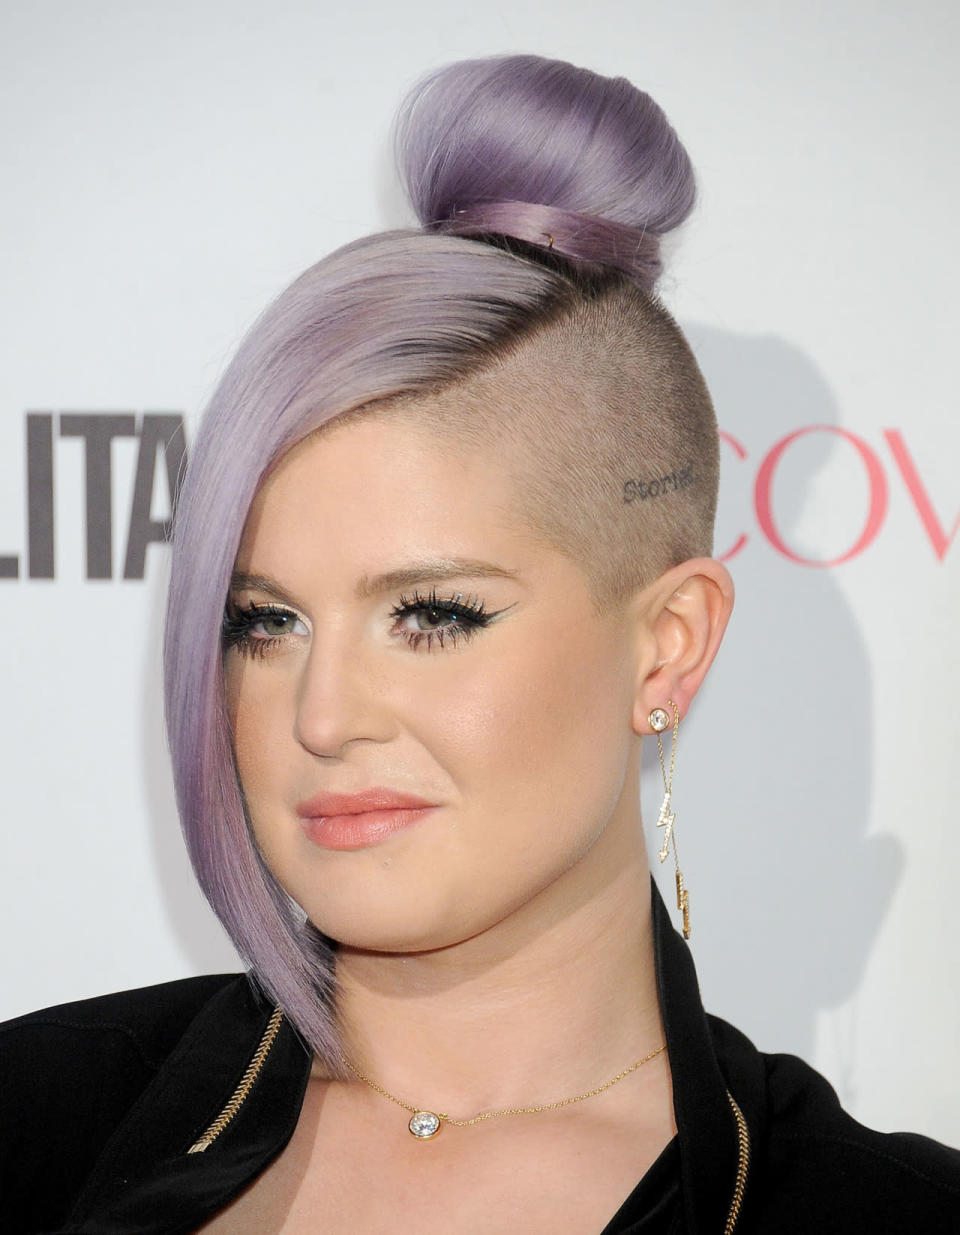 Kelly Osbourne a placé le violet clair en n°1 de ses colorations préférées. La star ne s’arrête pas là question coiffure et s’est tatouée « Stories » sur le côté gauche de sa tête qu’elle a au préalable rasé.